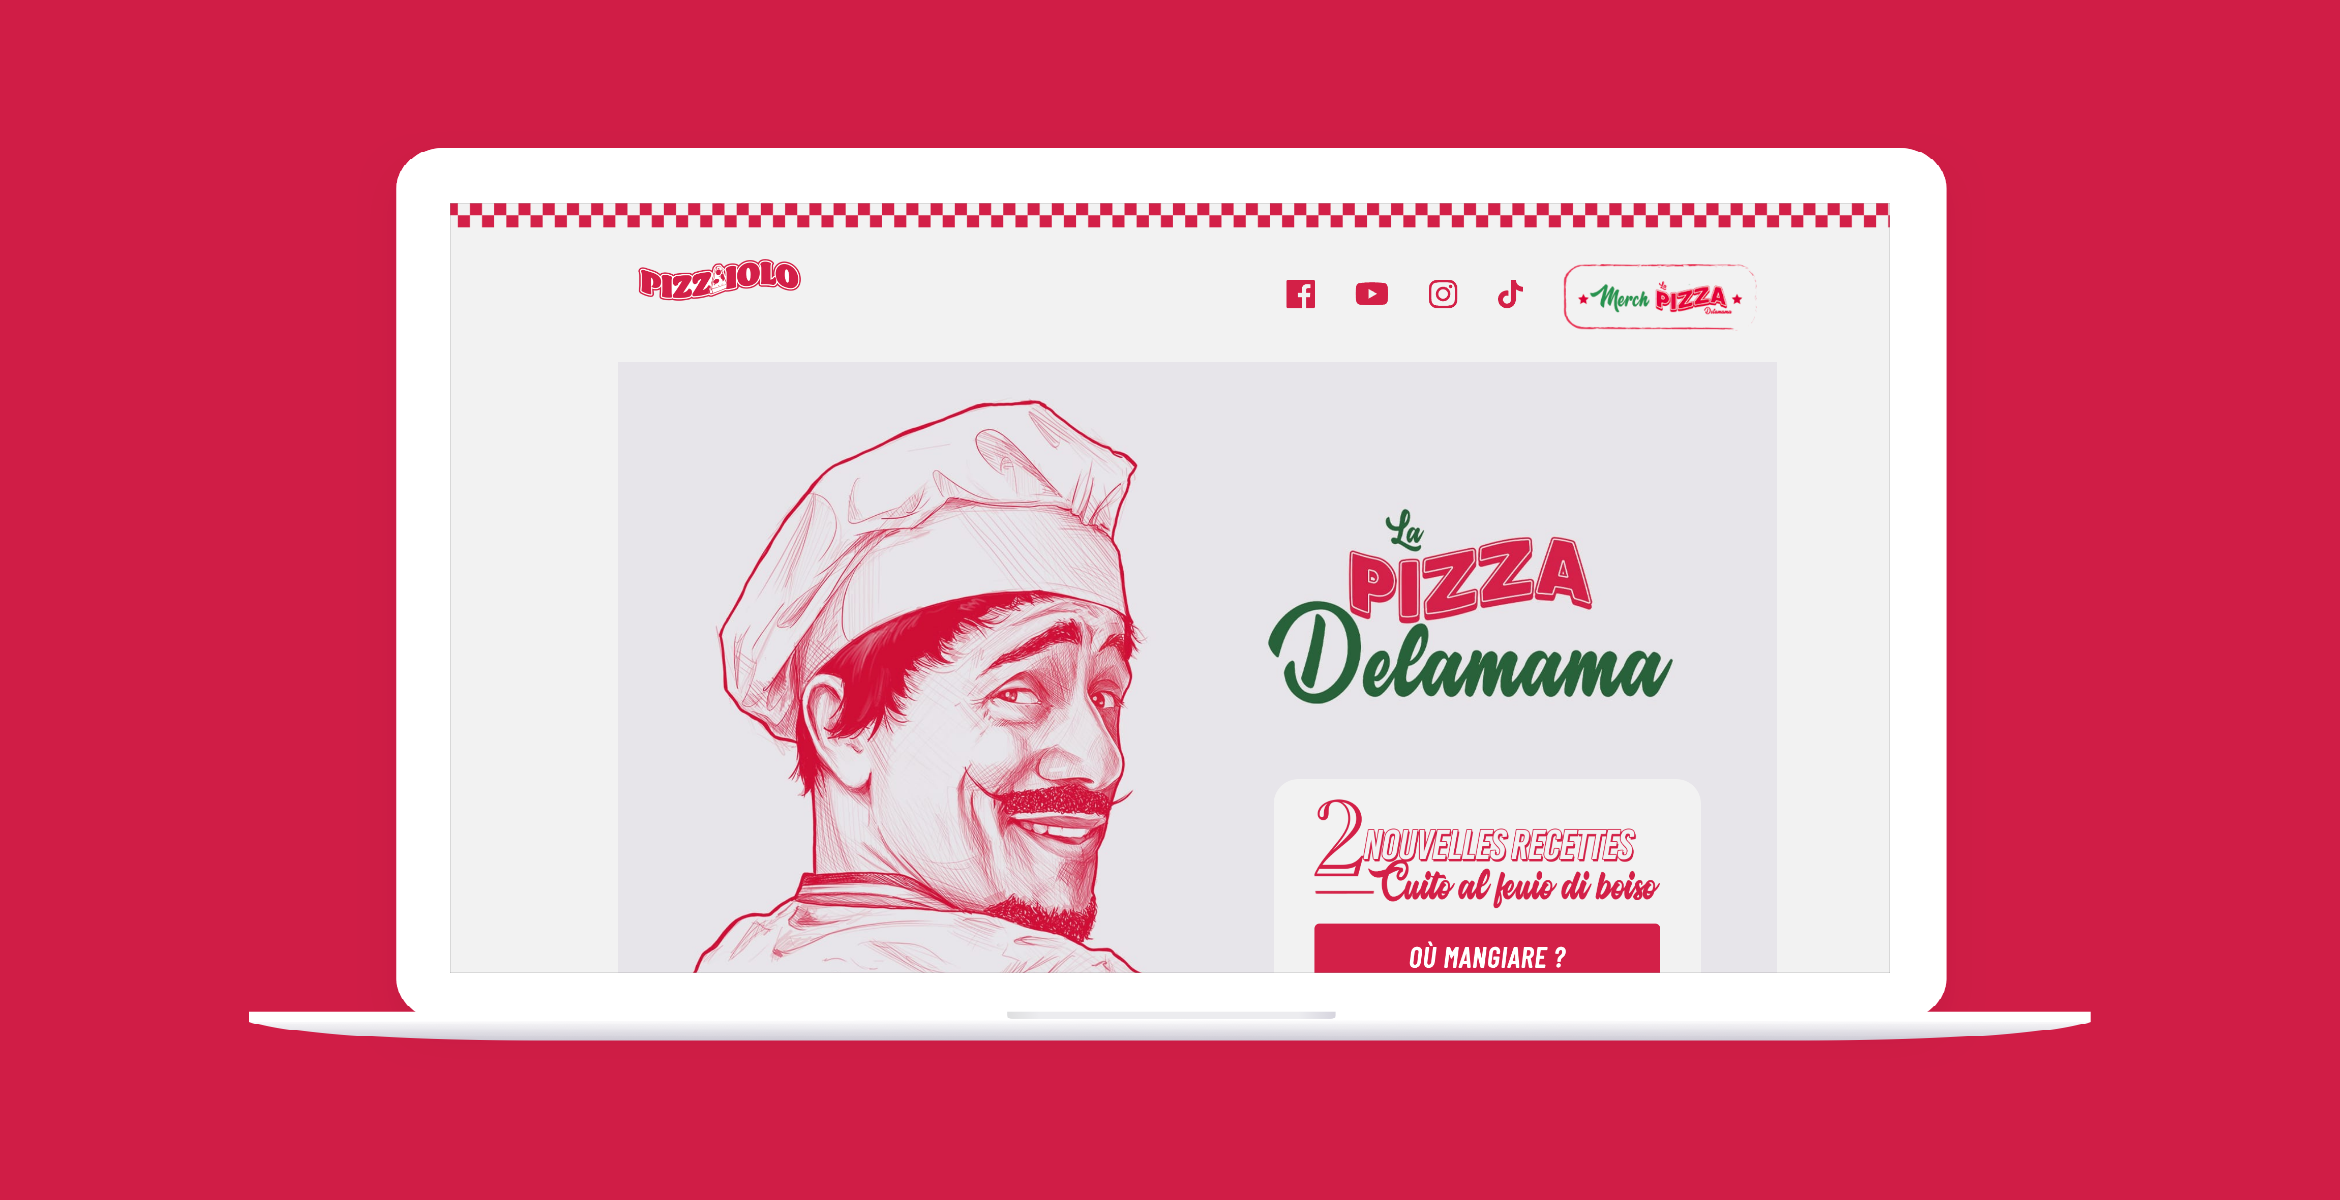 idizbox - digital & print - Mister V : Pizzaiolo La Pizza Delamama